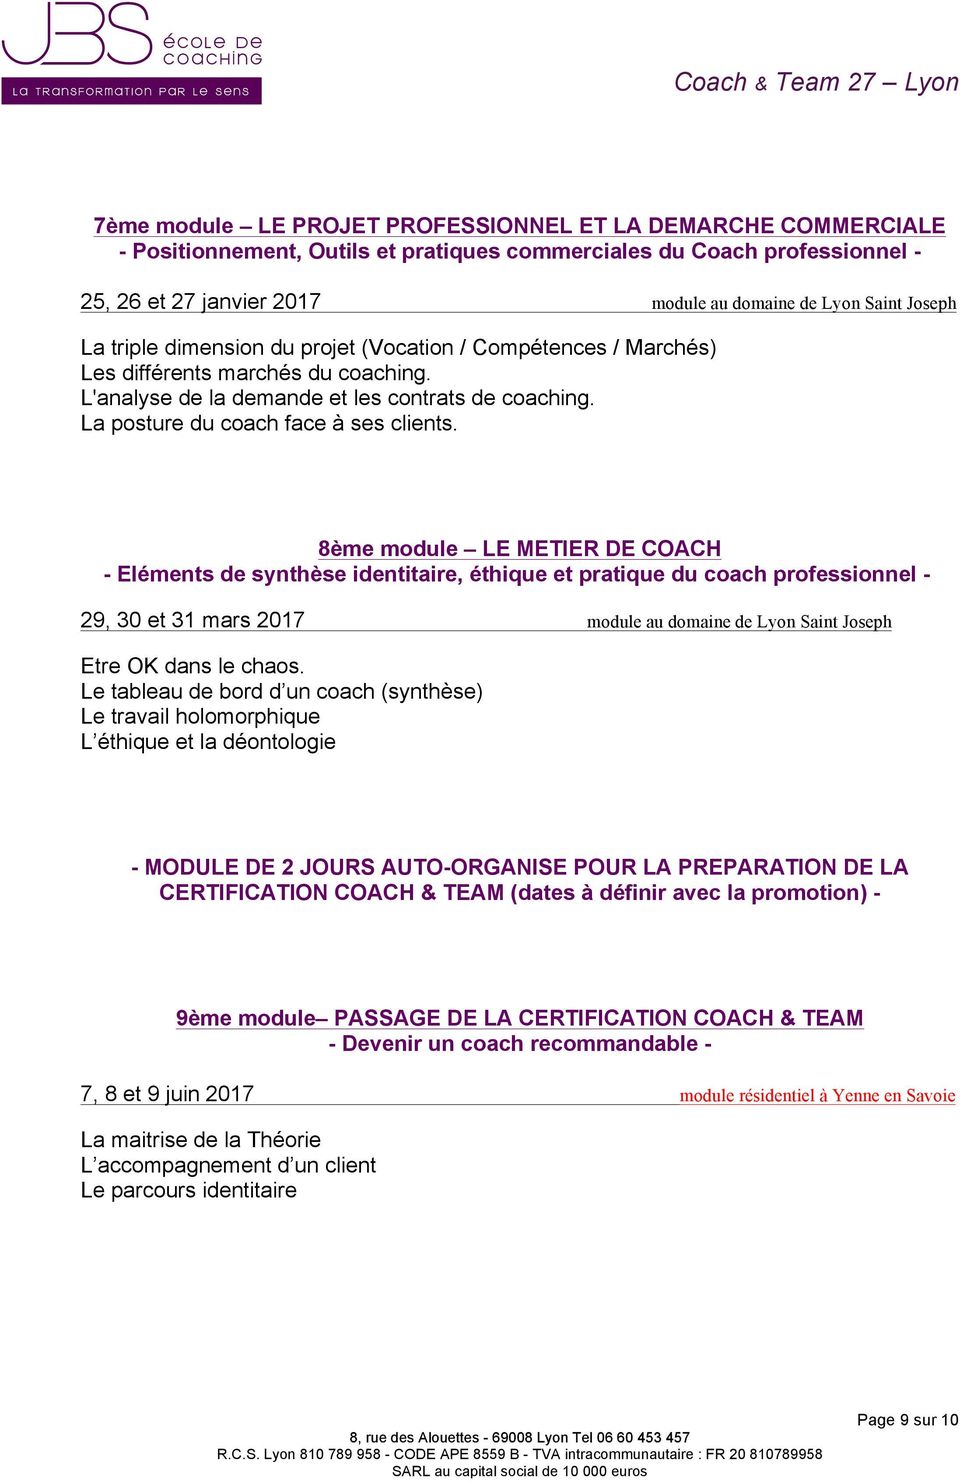 8ème module LE METIER DE COACH - Eléments de synthèse identitaire, éthique et pratique du coach professionnel - 29, 30 et 31 mars 2017 module au domaine de Lyon Saint Joseph Etre OK dans le chaos.